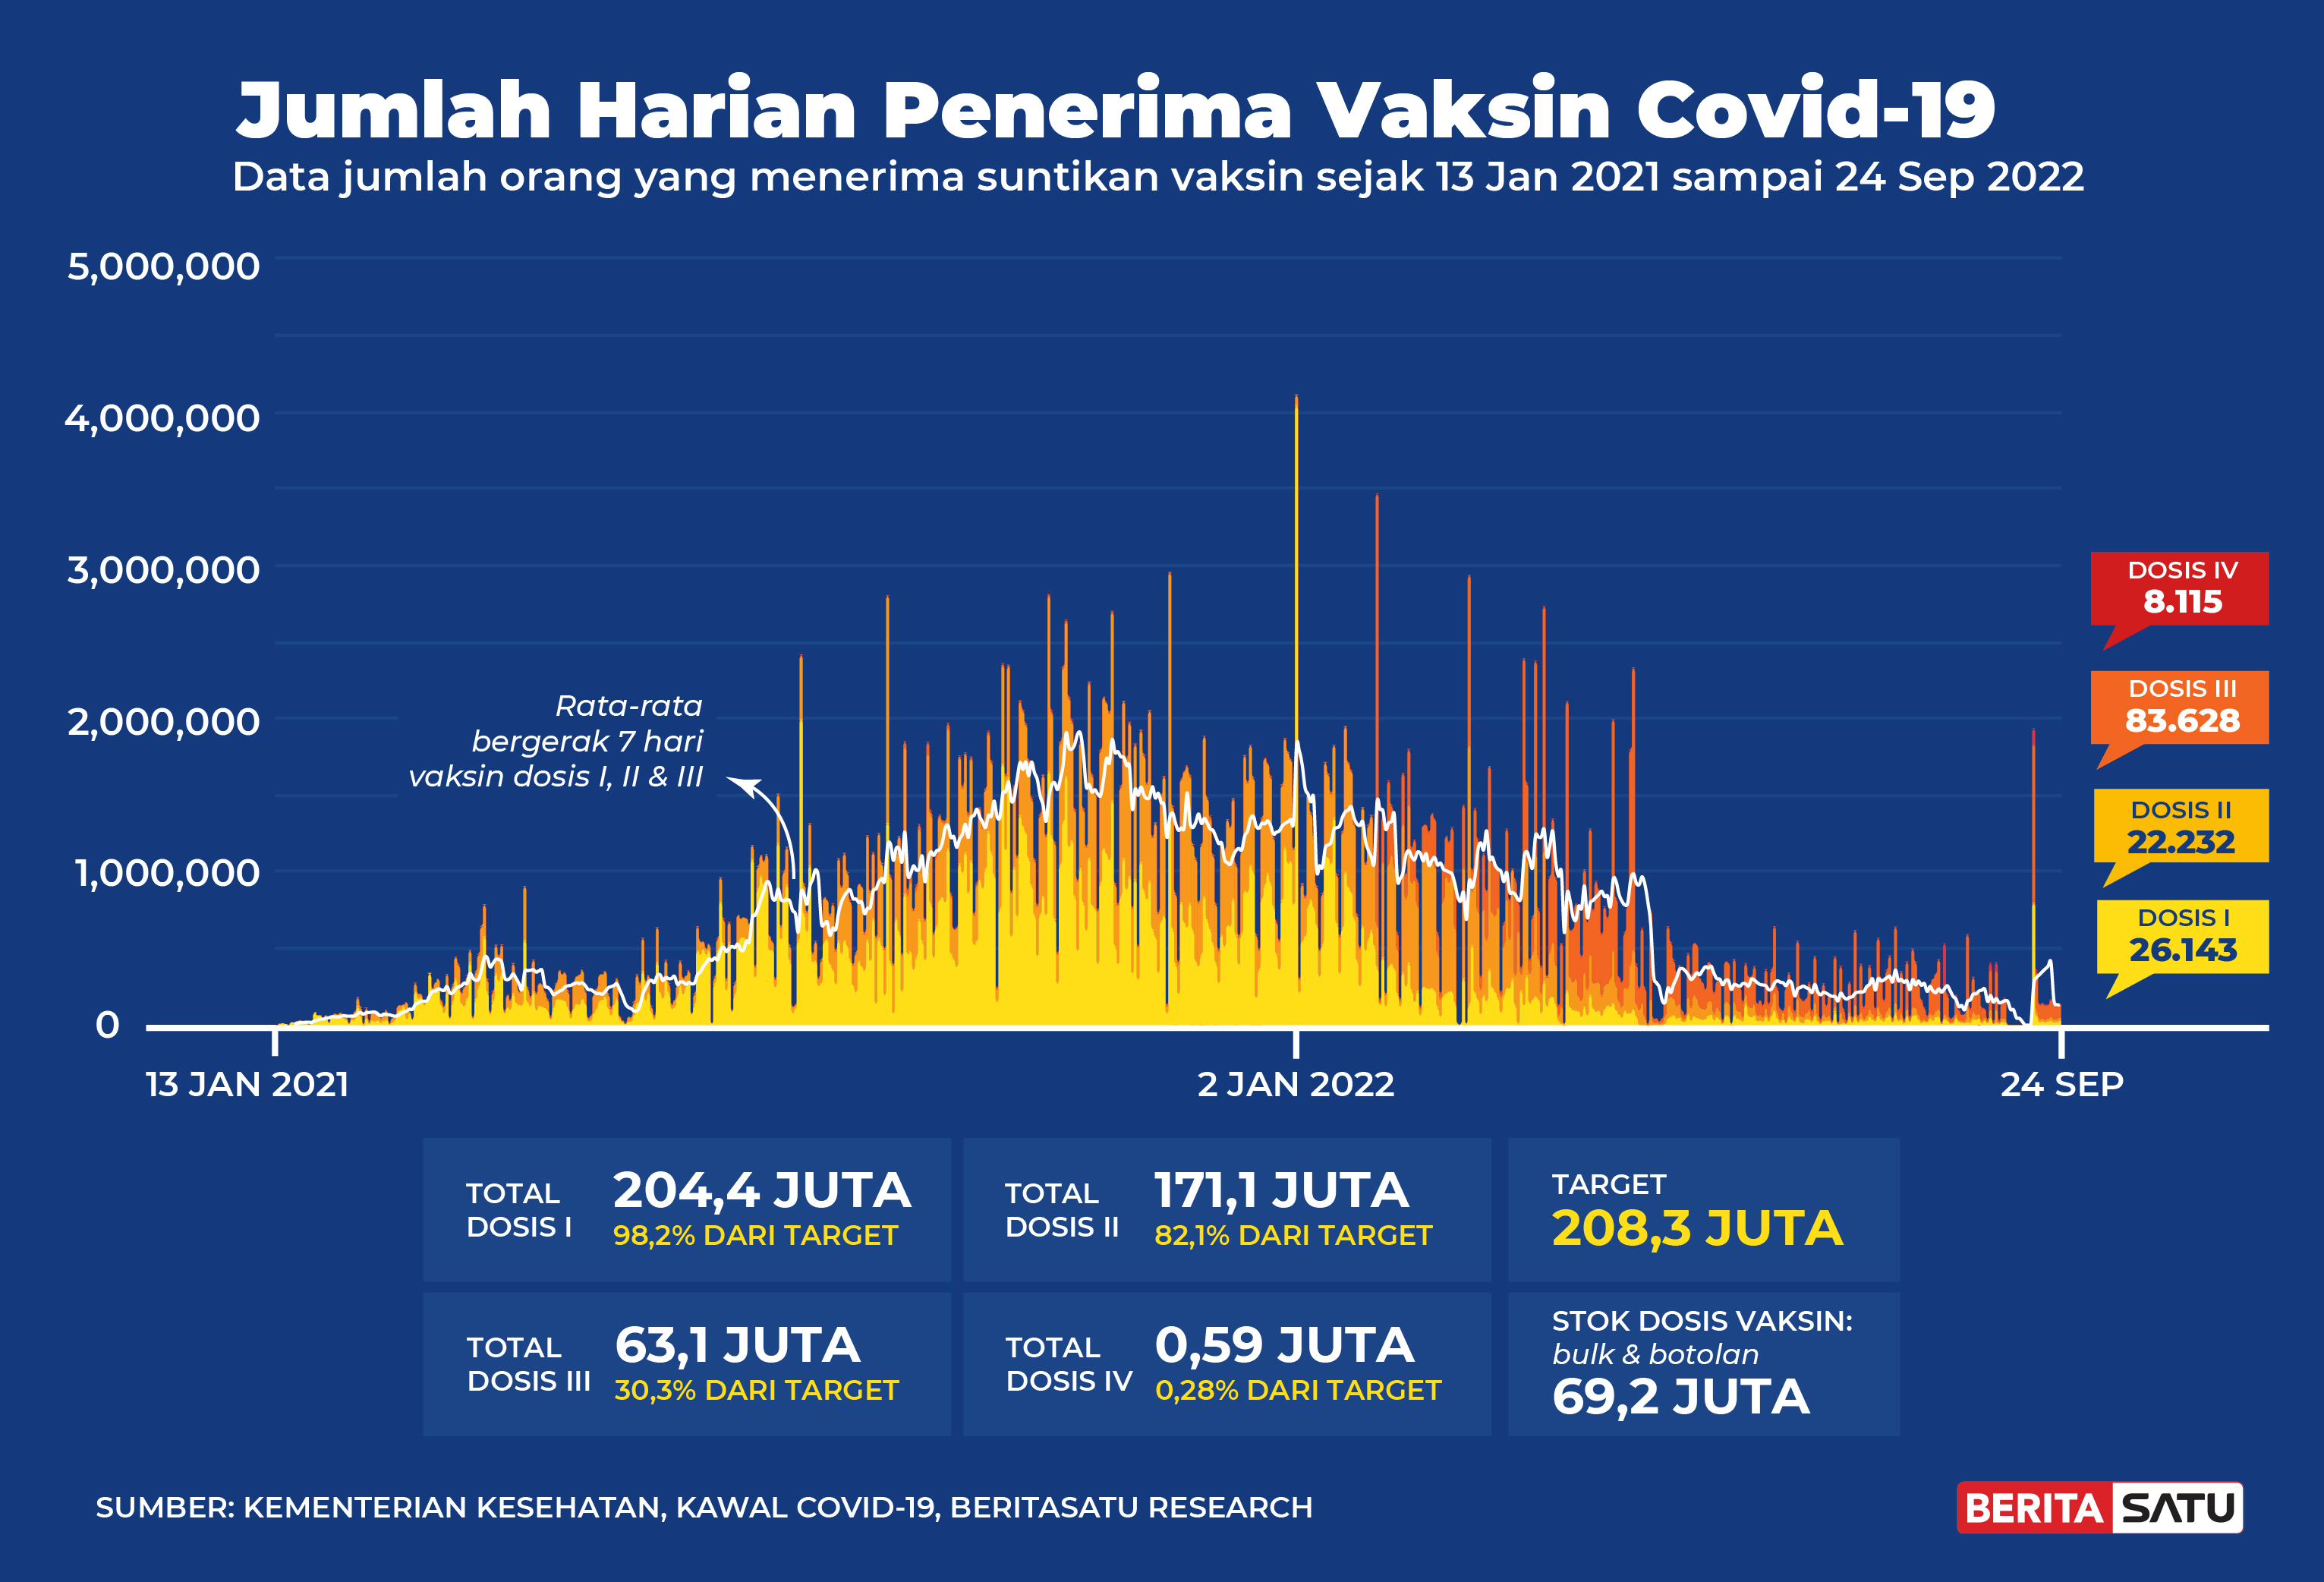 Jumlah Penerima Vaksin Covid-19 sampai 24 September 2022